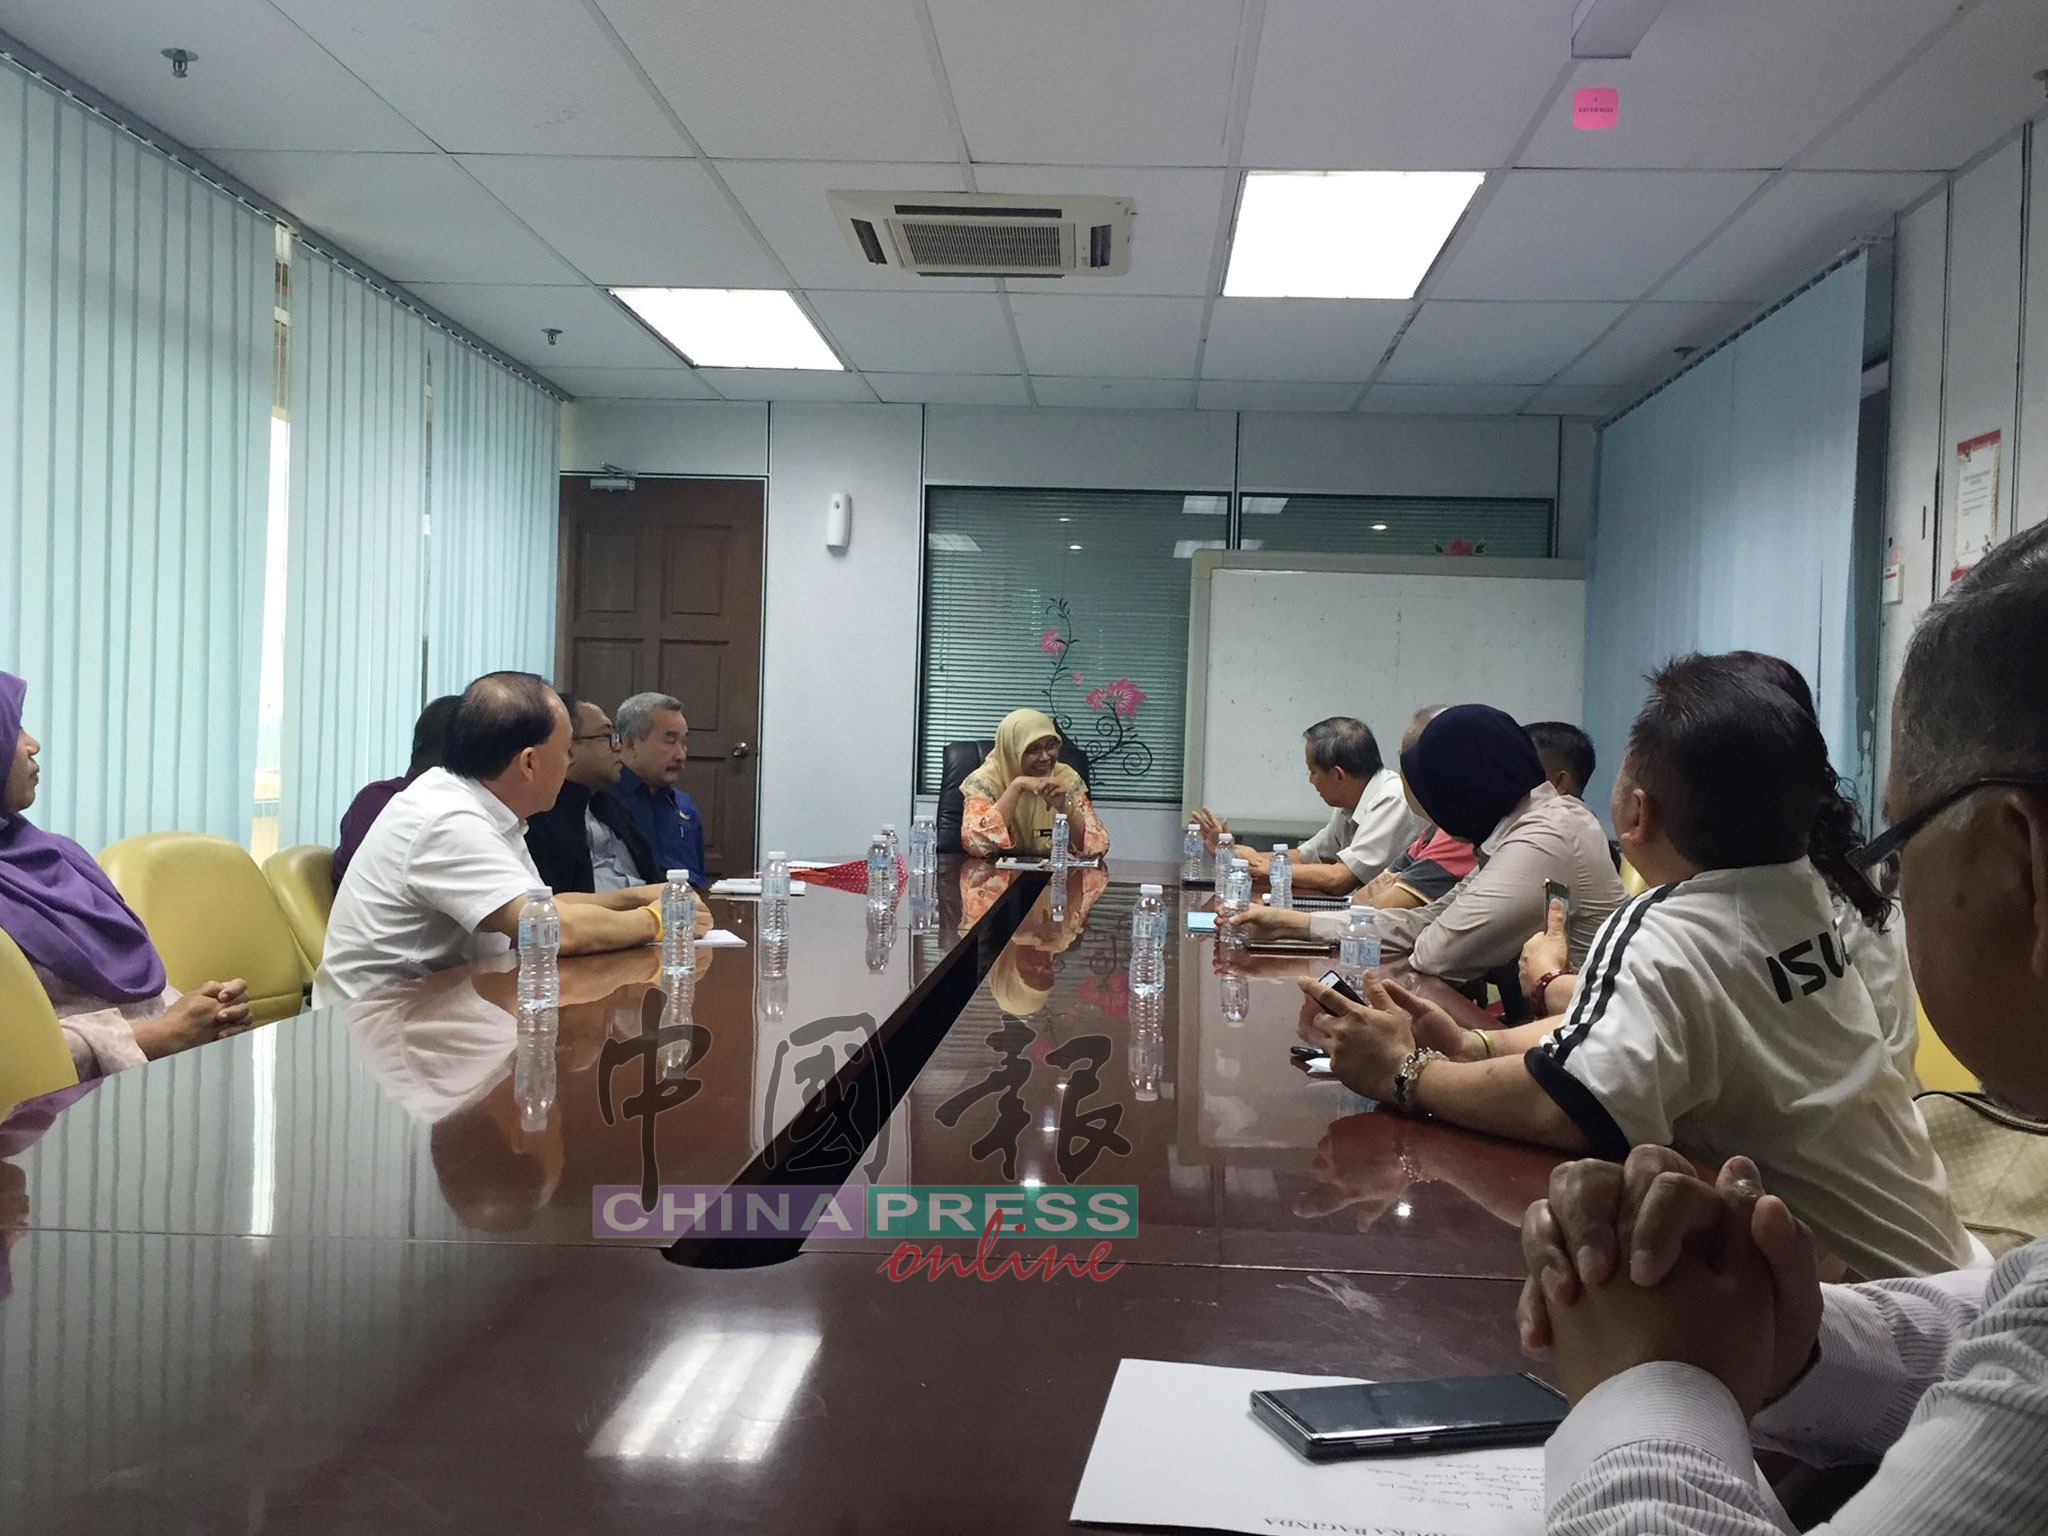 淡马鲁市议会与善信代表及人民代议士对话。